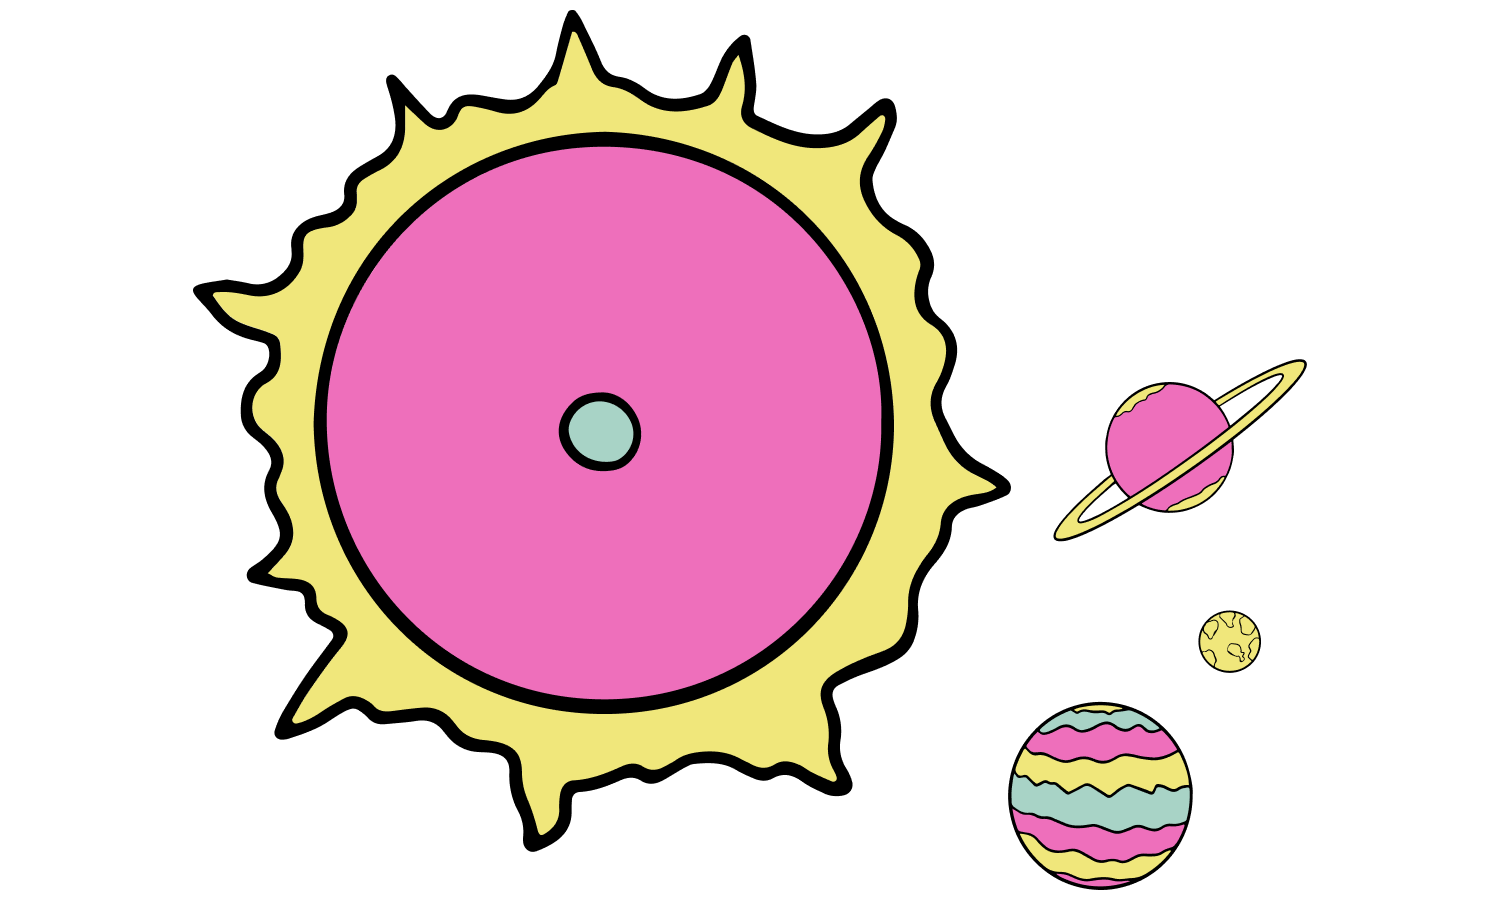 il-sun-planets